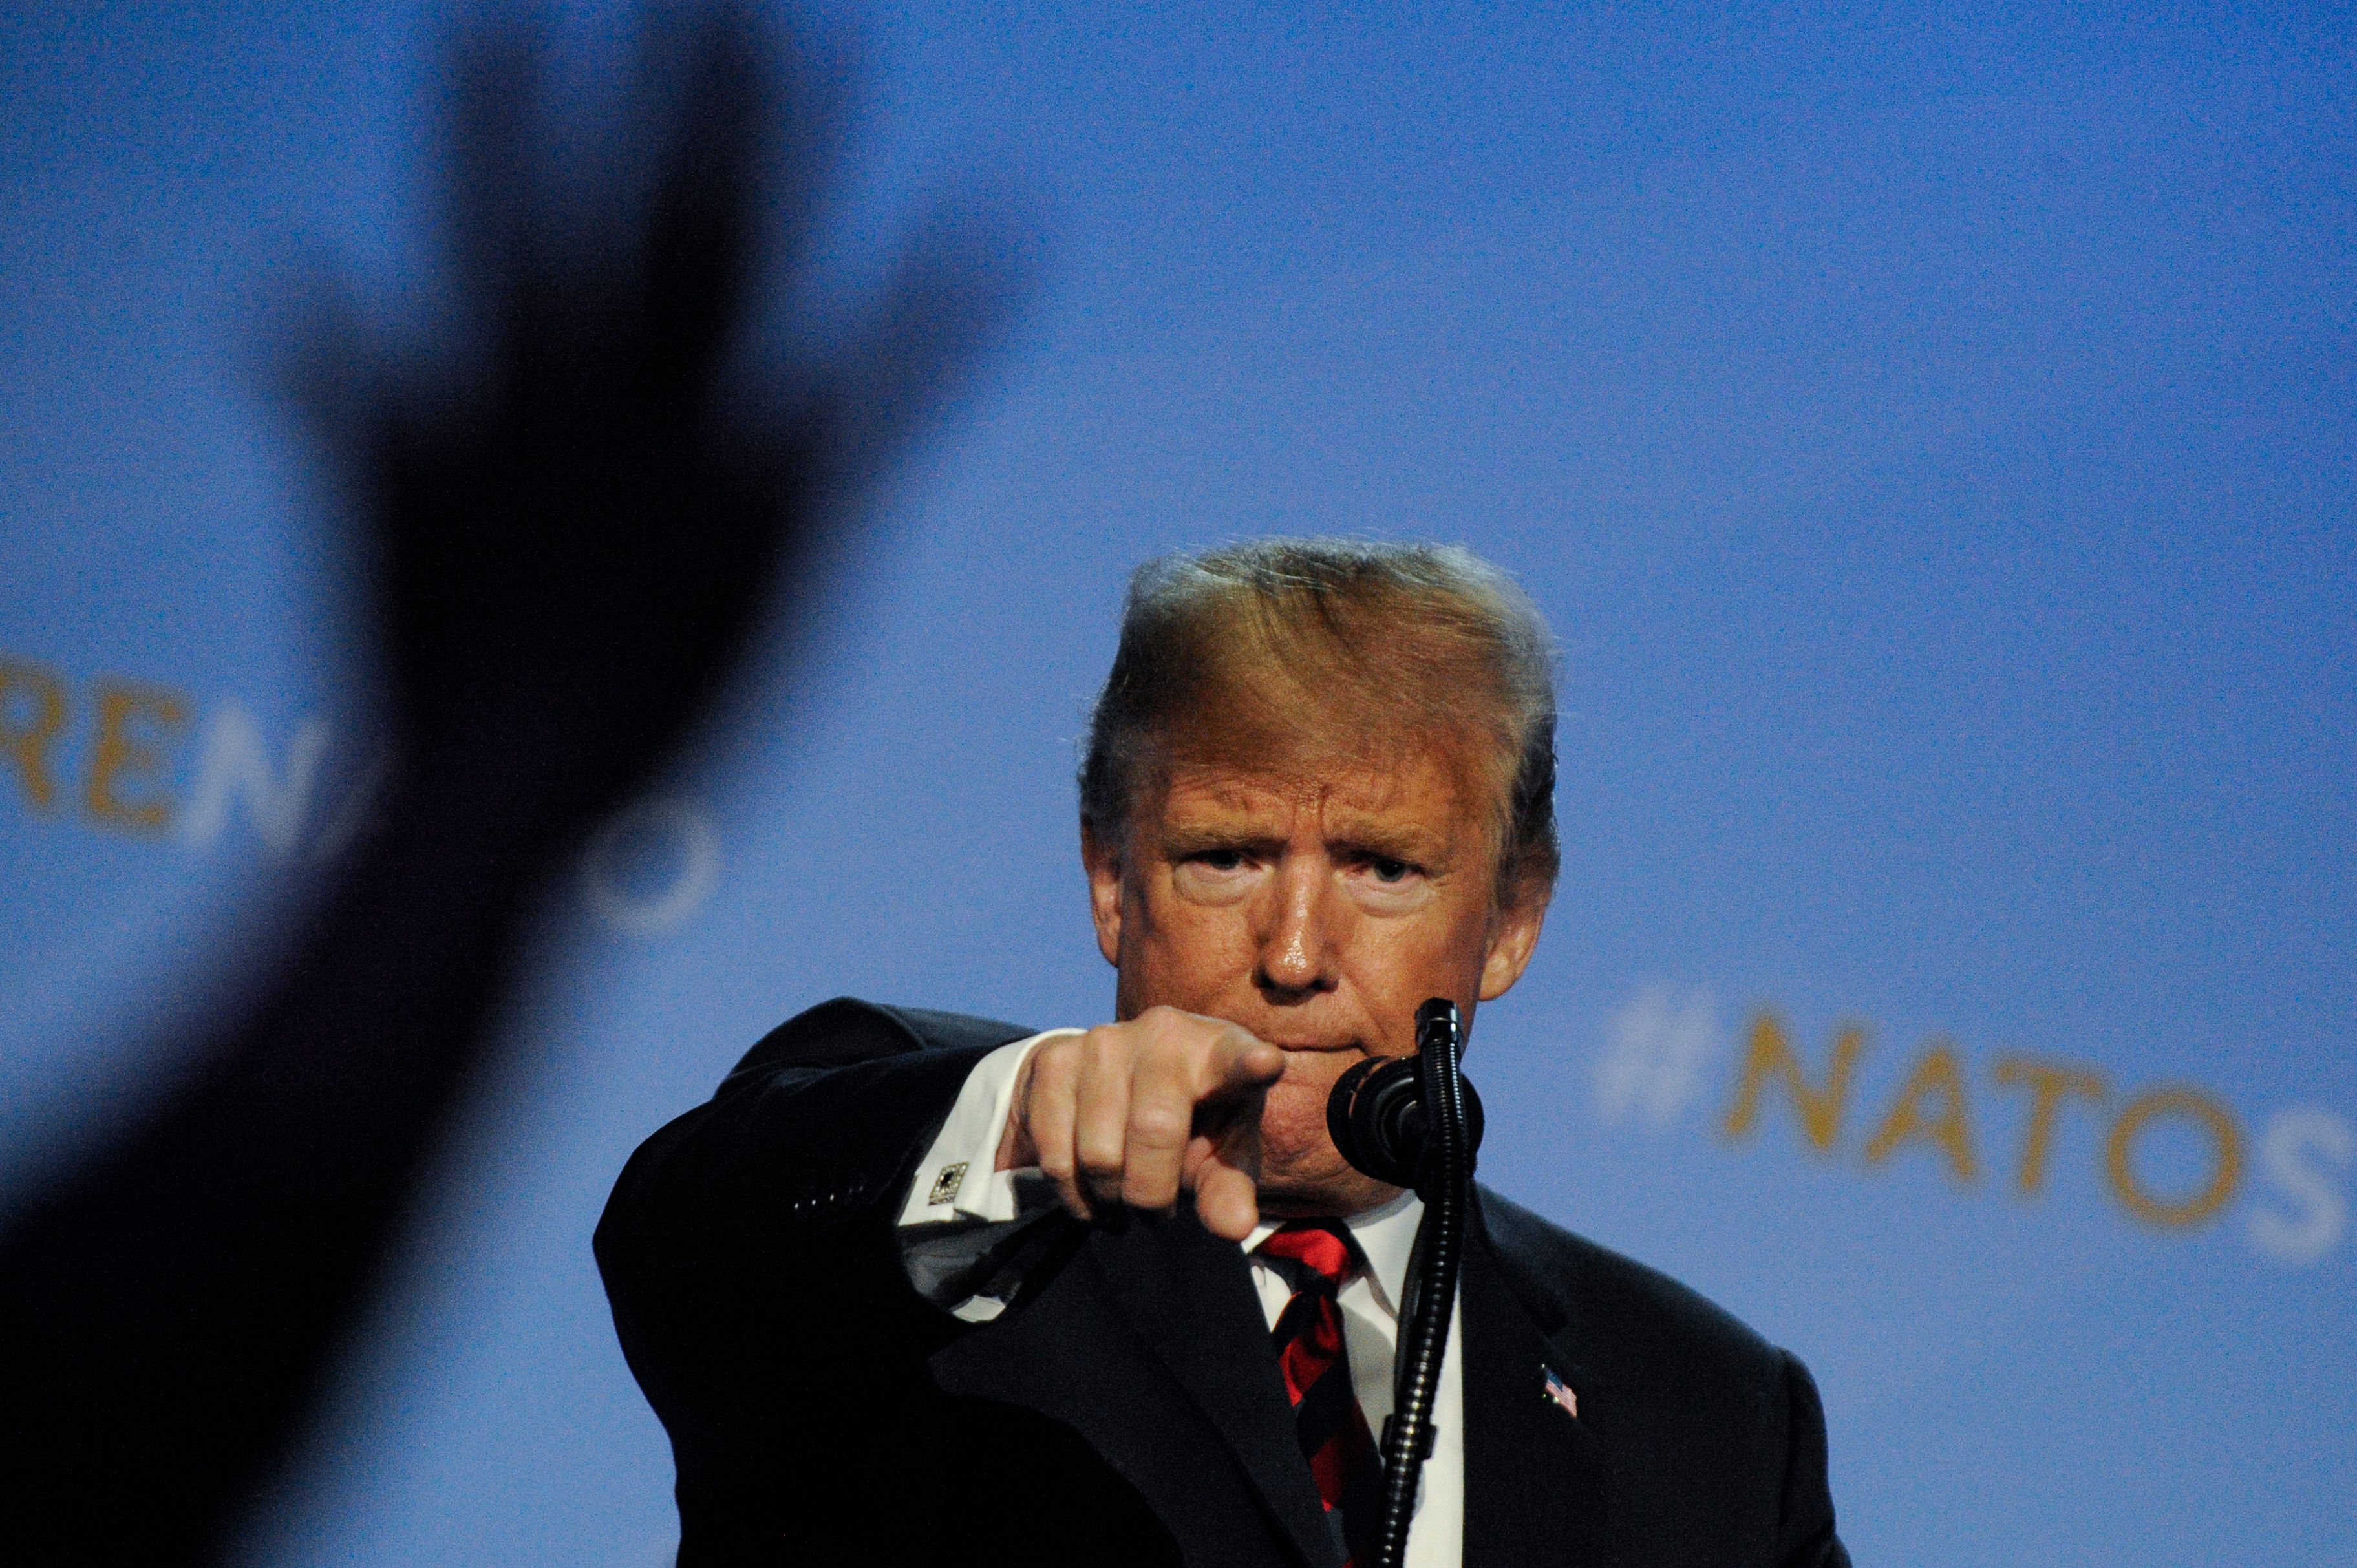 Donald Trump Press Conference At NATO summit